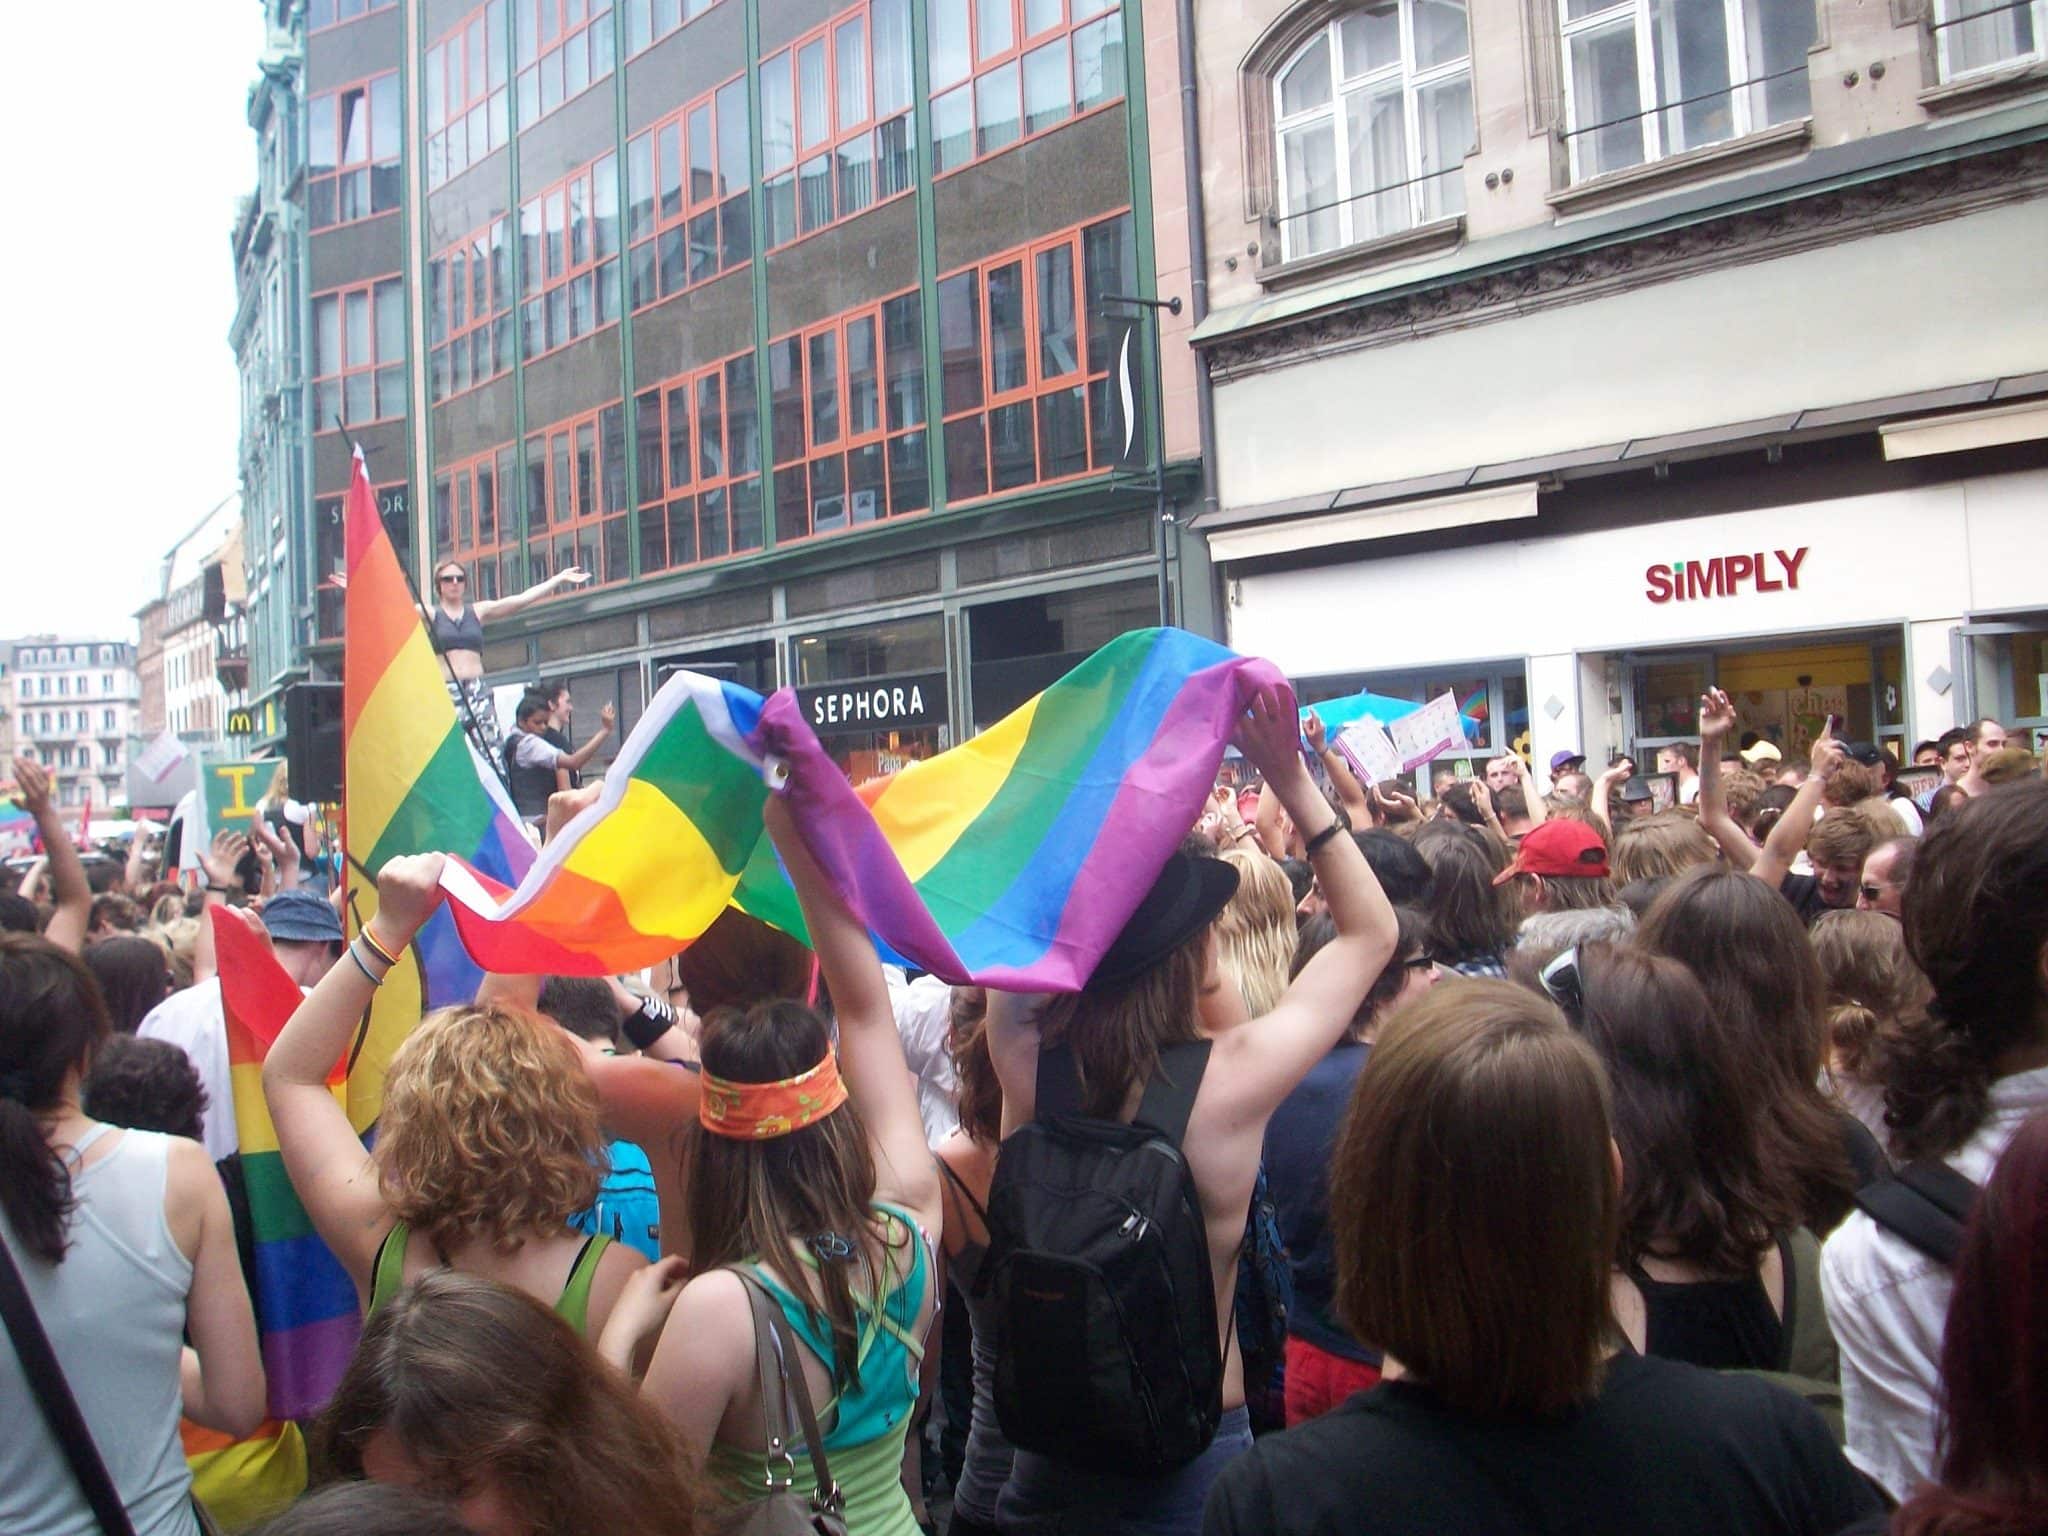 A Strasbourg, la marche des visibilités est un des rares moments festifs et public pur la communauté LGBT (Photo DL/Rue 89 Strasbourg/cc)